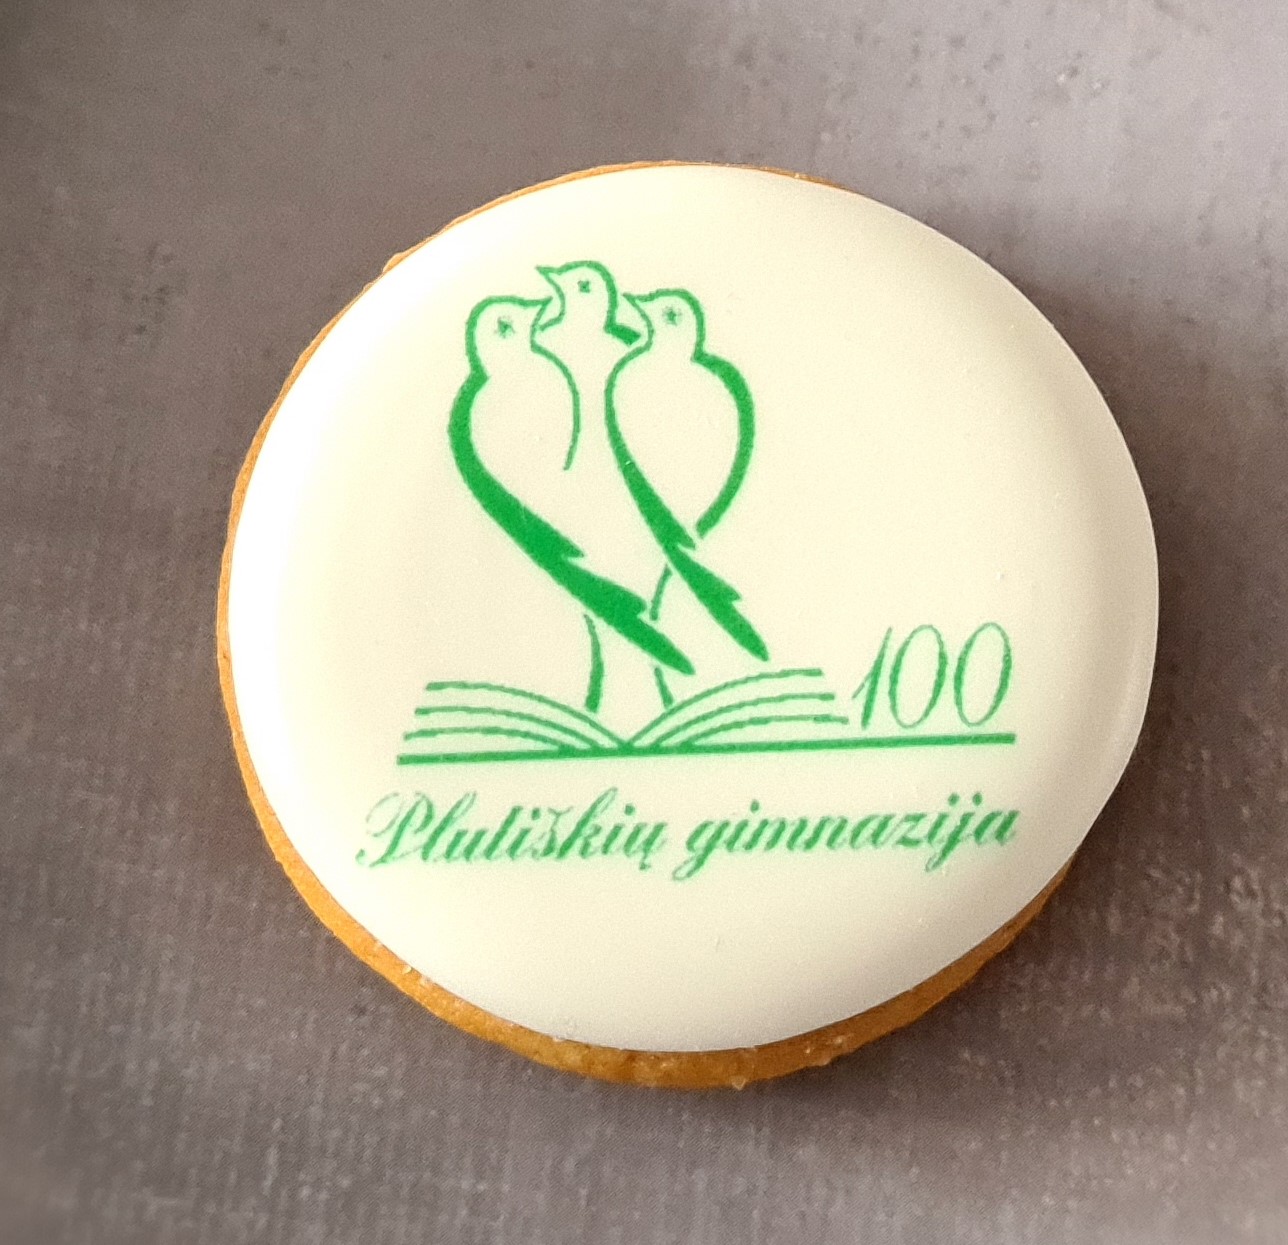 dekoruoti imbieriniai sausainiai su logotipu Plutiškių gimnazija